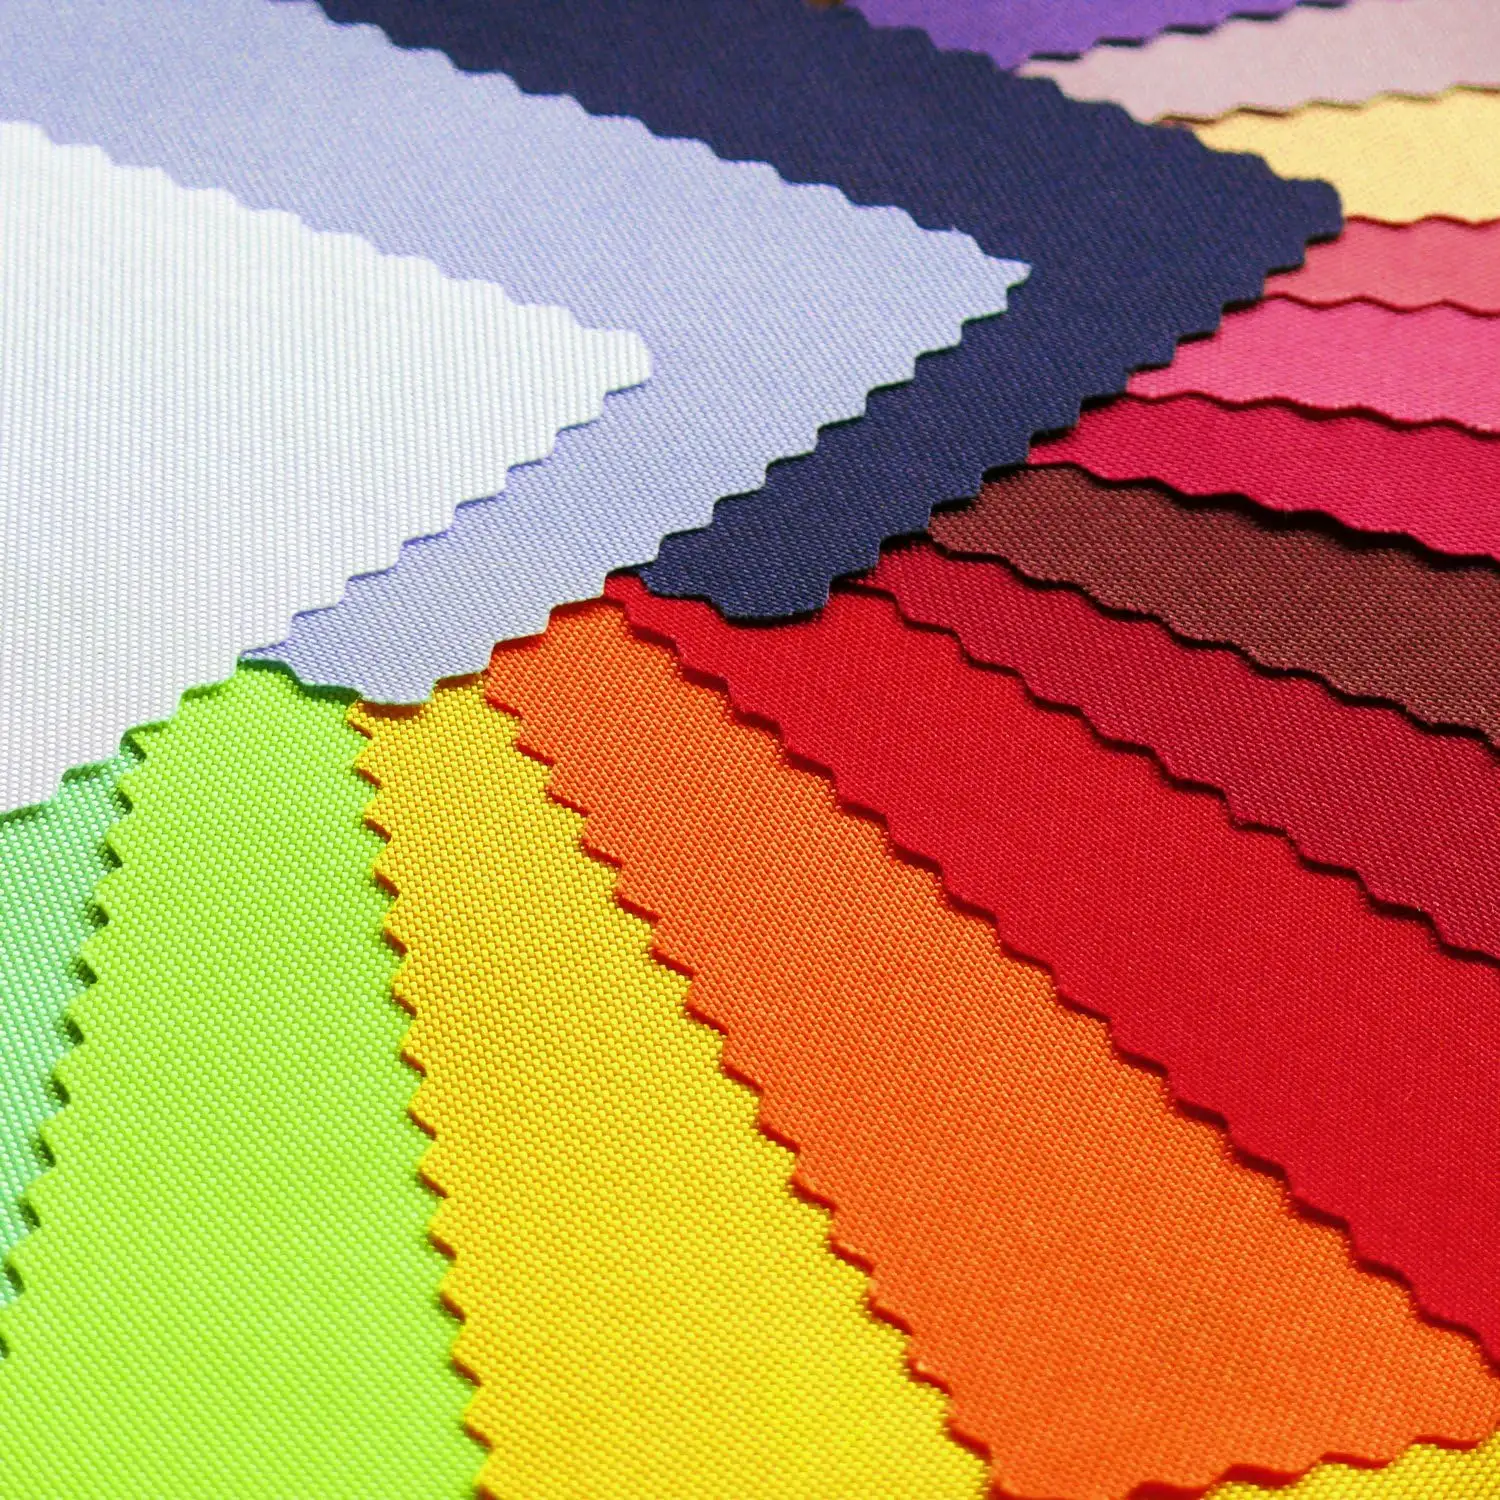 Novo estilo 600d poliéster tecidos Pvc Pu revestimento tecido impermeável Ripstop Oxford tecido para piquenique saco